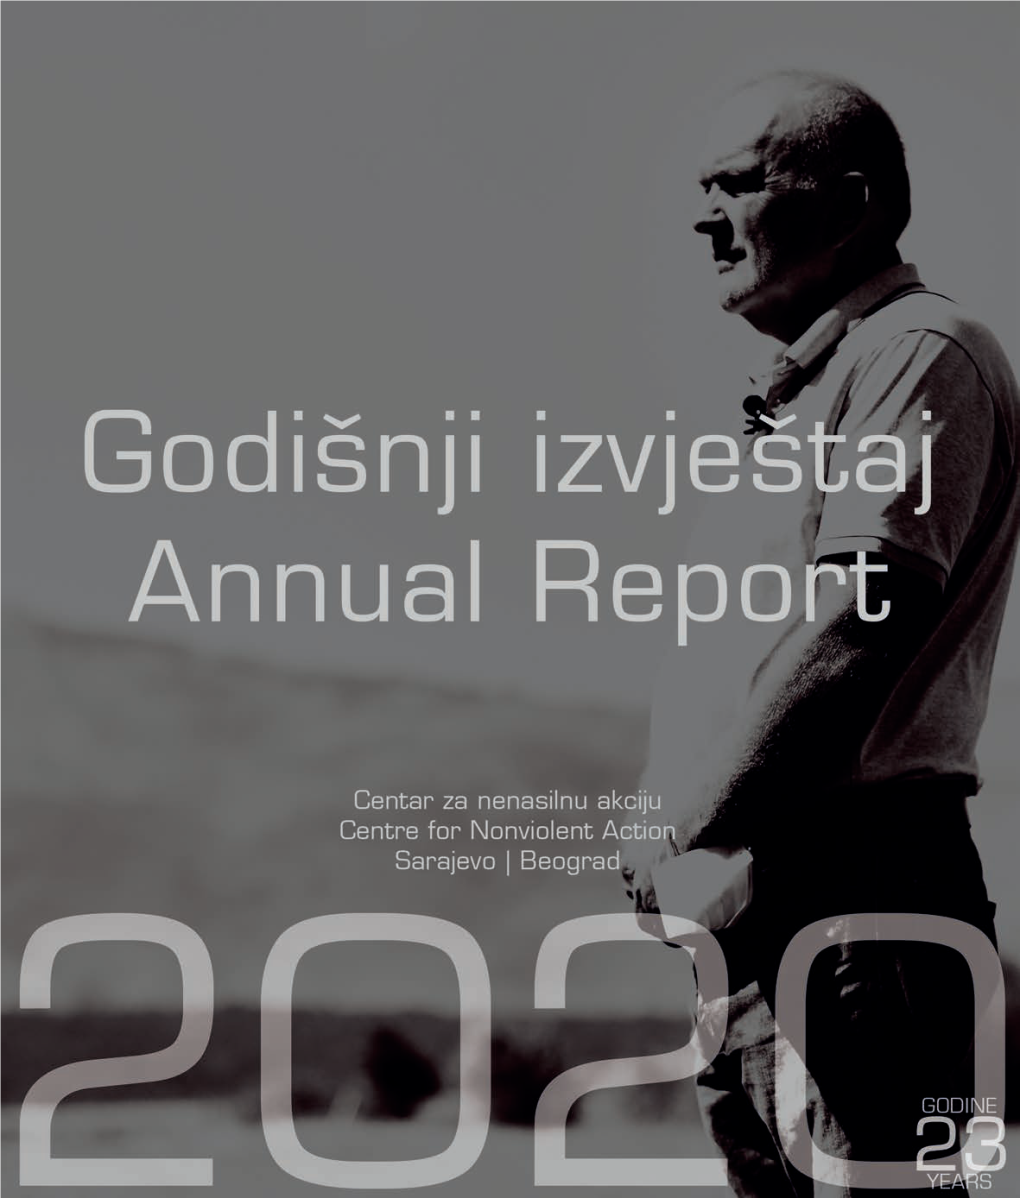 Godišnji Izveštaj 2020 / Annual Report 2020